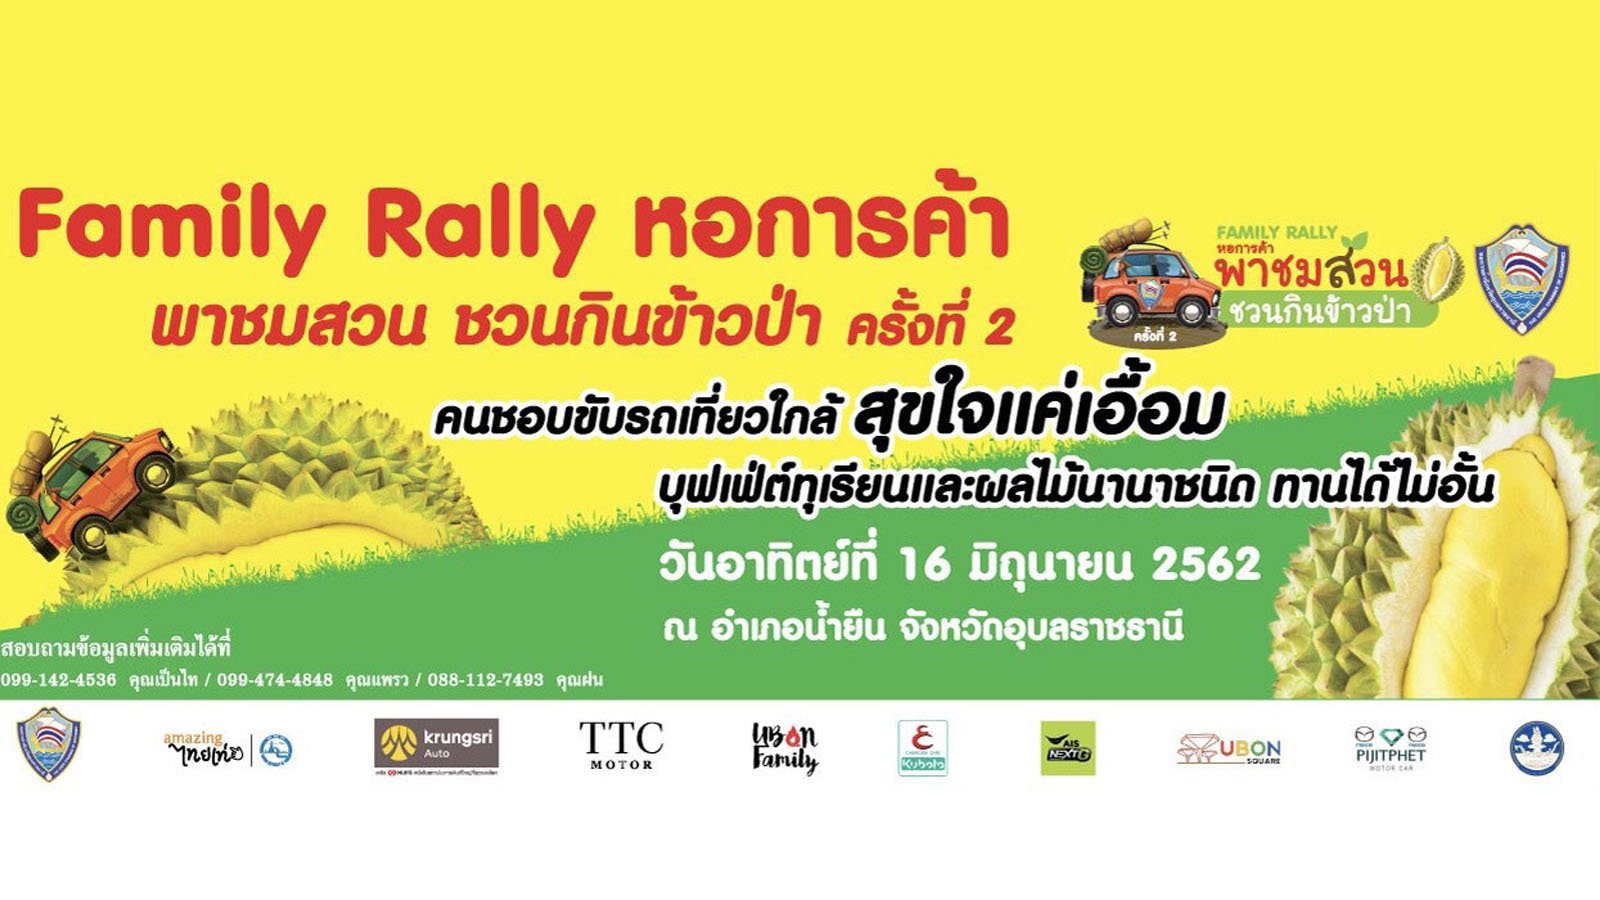 ขอเชิญร่วมกิจกรรม “หอการค้า พาชมสวน ชวนกินข้าวป่า family Rally ครั้งที่ 2”